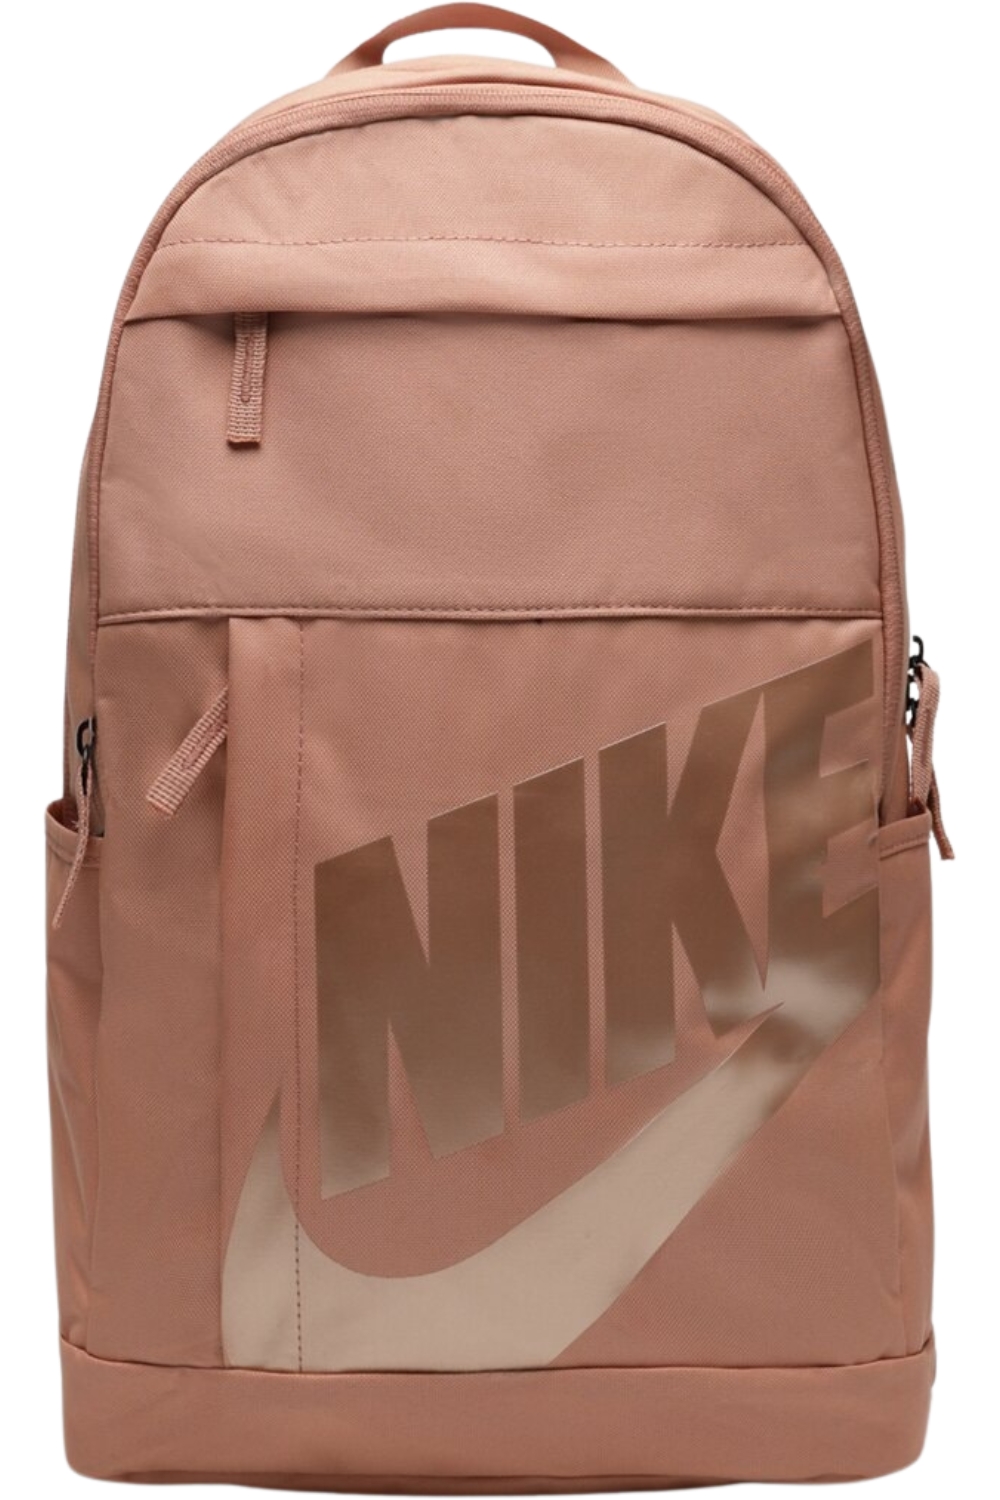 Plecak Nike Elemental różowy szkolny turystyczny miejski